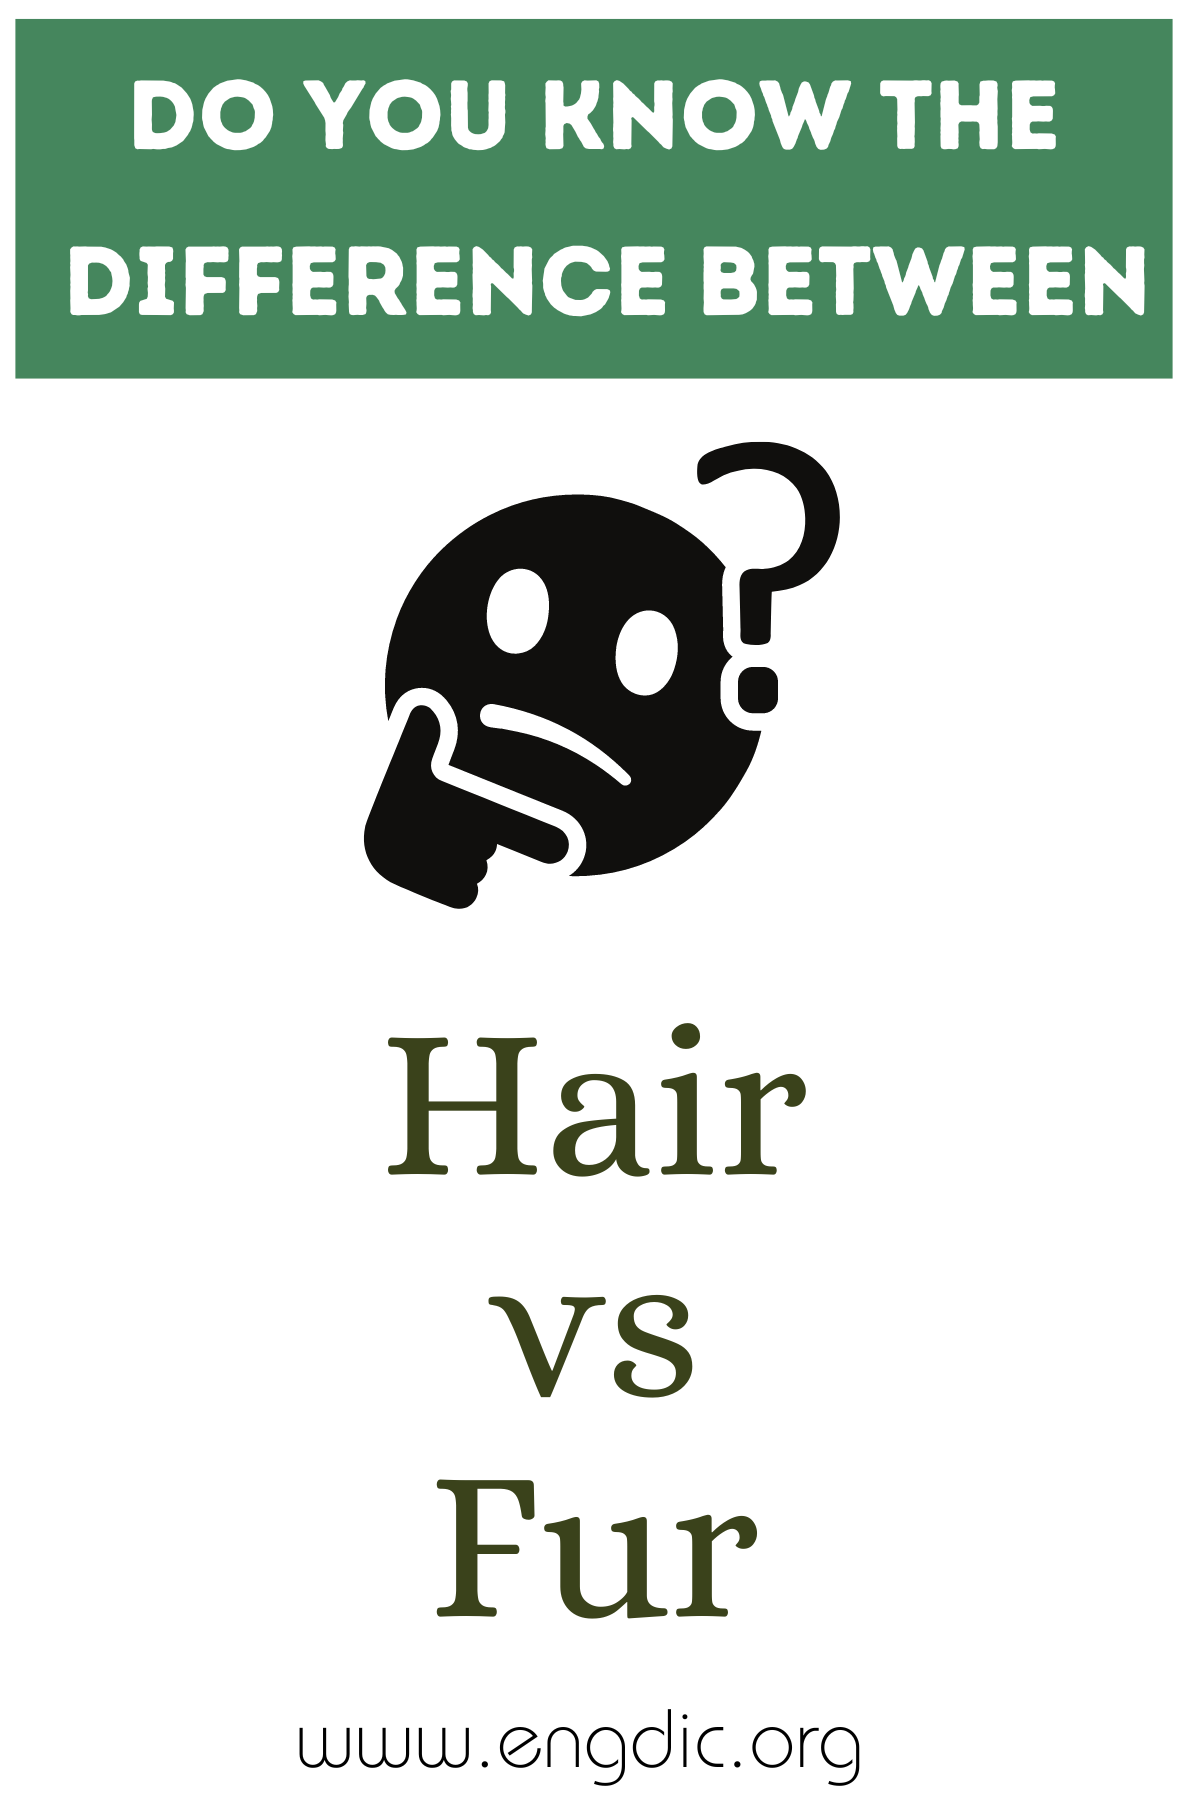 Hair vs Fur